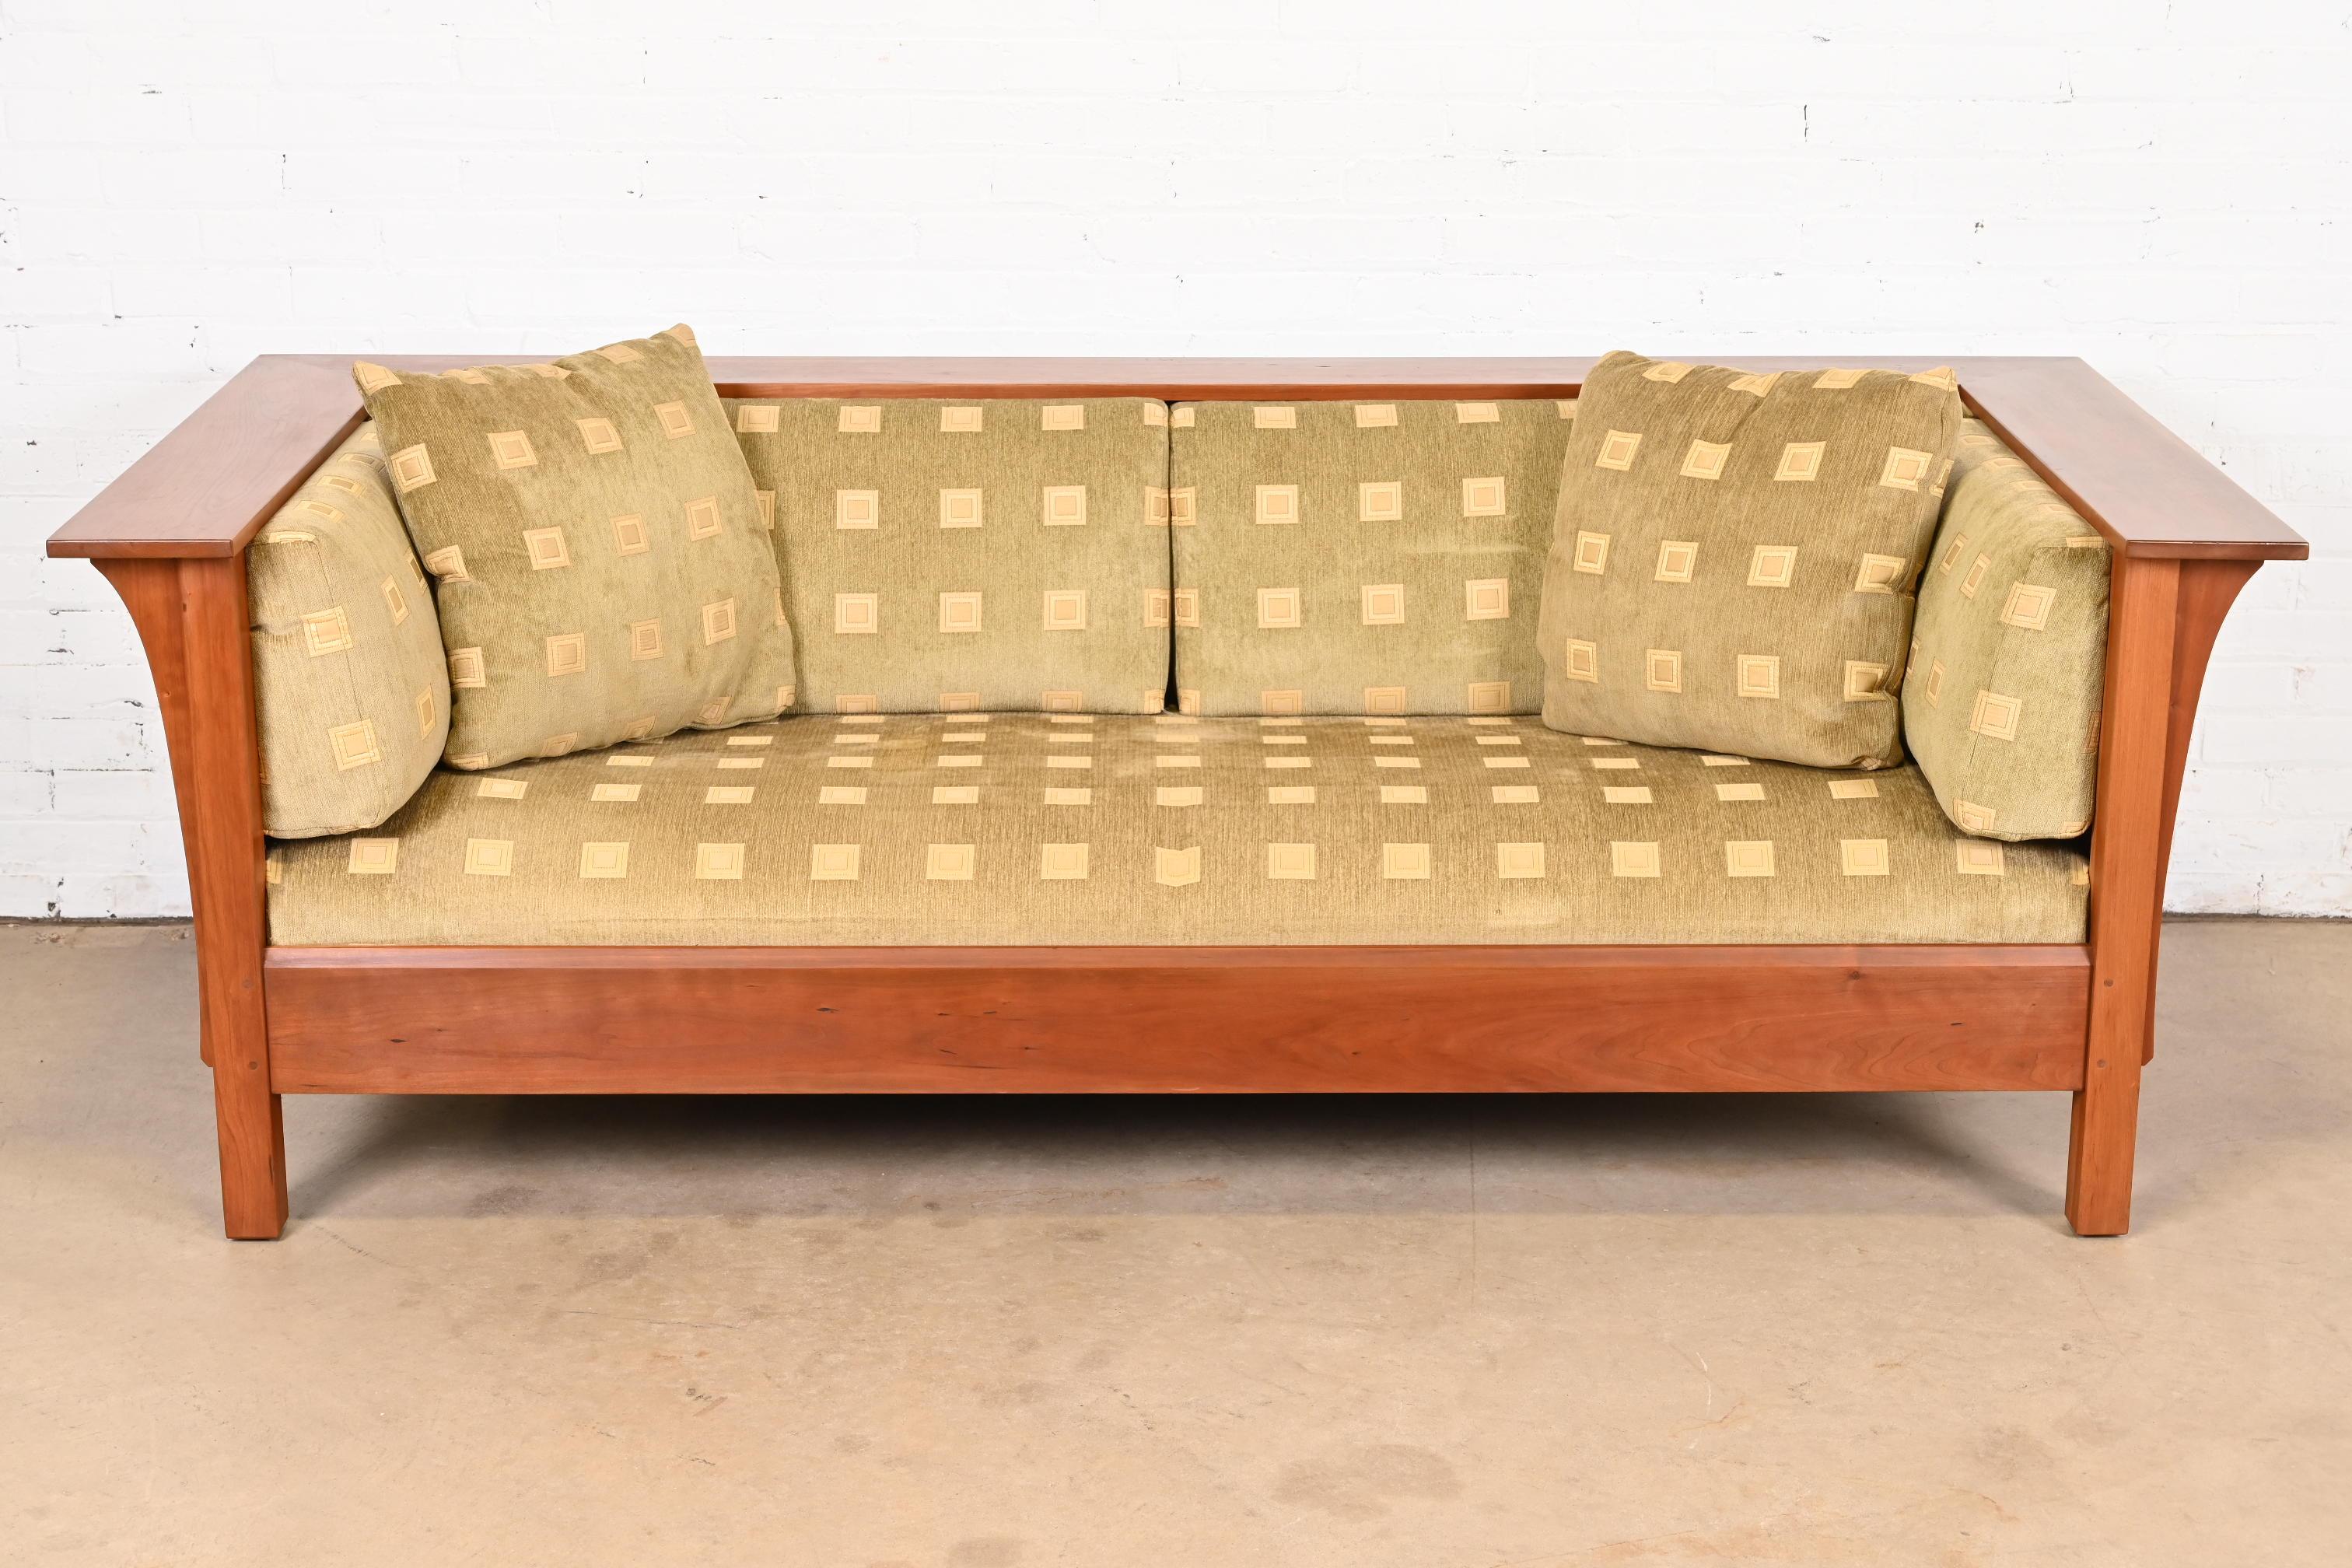 Ein wunderschönes Sofa im Missions- oder Arts & Crafts-Stil aus der Prärie

Von L. & J.G Stickley

USA, 21. Jahrhundert

Gestell aus massivem Kirschholz, mit Originalpolsterung.

Maße: 84,5 